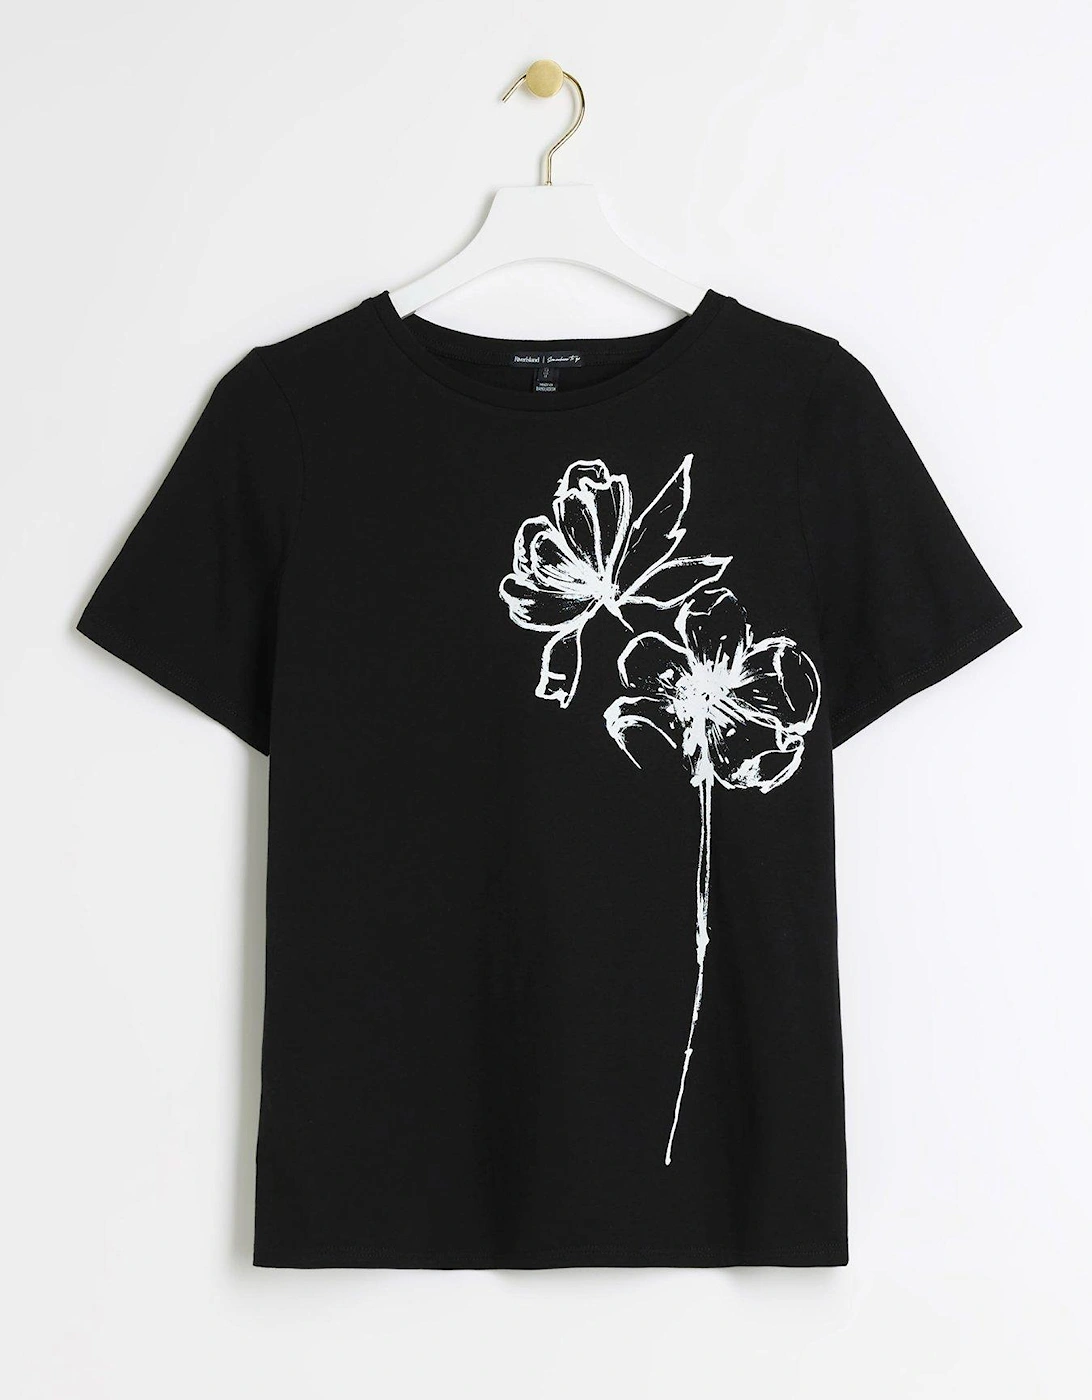 Sketch Design T-Shirt - Black